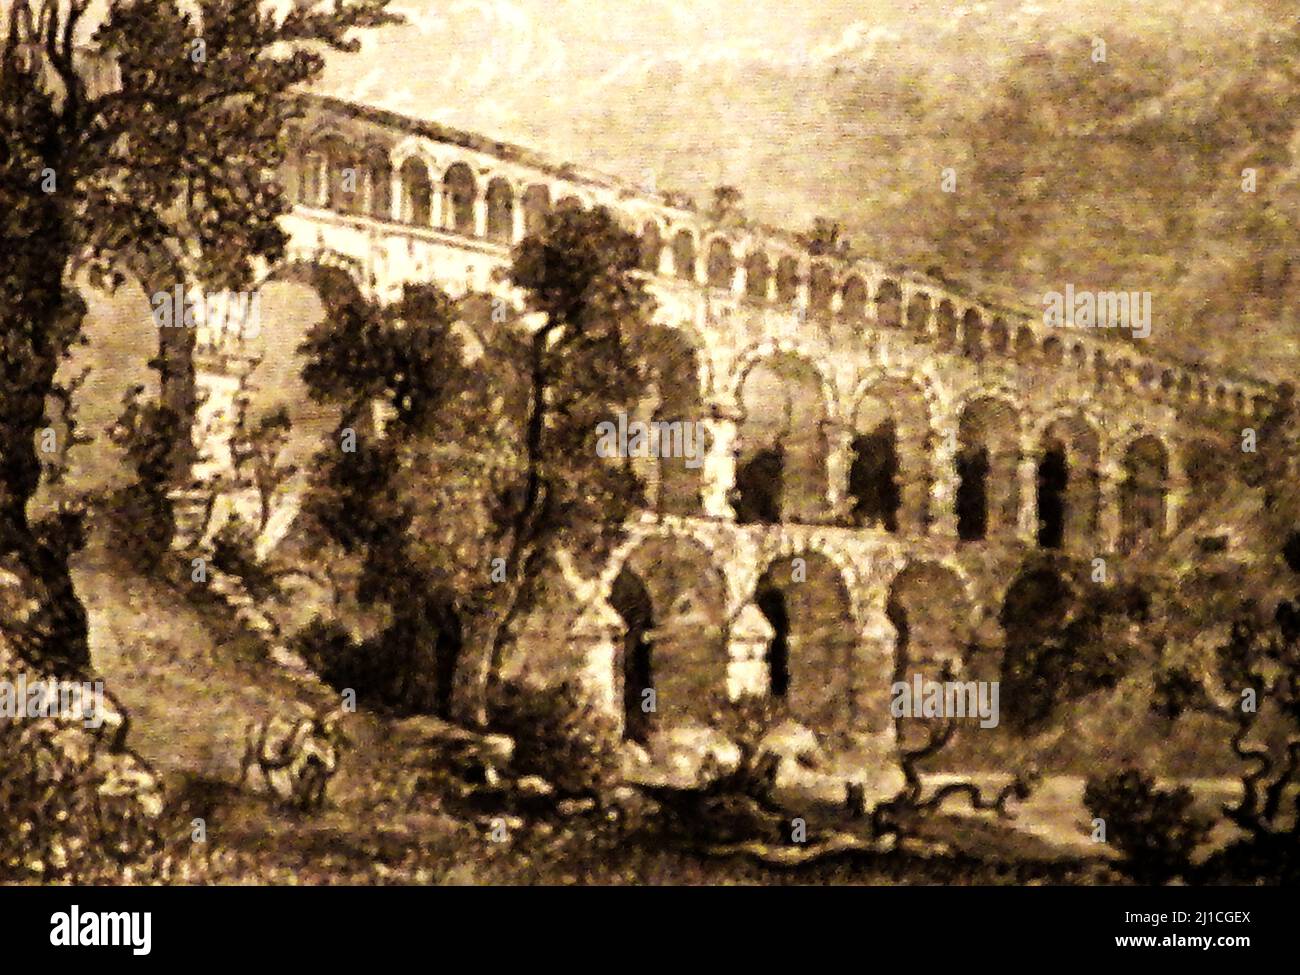 Una impresión artística del siglo 19th del acueducto Pont du Gard como era en ese momento. Este antiguo acueducto romano de 48,8 m (160 pies) fue construido en el siglo I dC para llevar agua sobre el campo de 50 km (31 millas) a la colonia romana de Nemausus (Nimes). El puente abarca el río Gardon Foto de stock